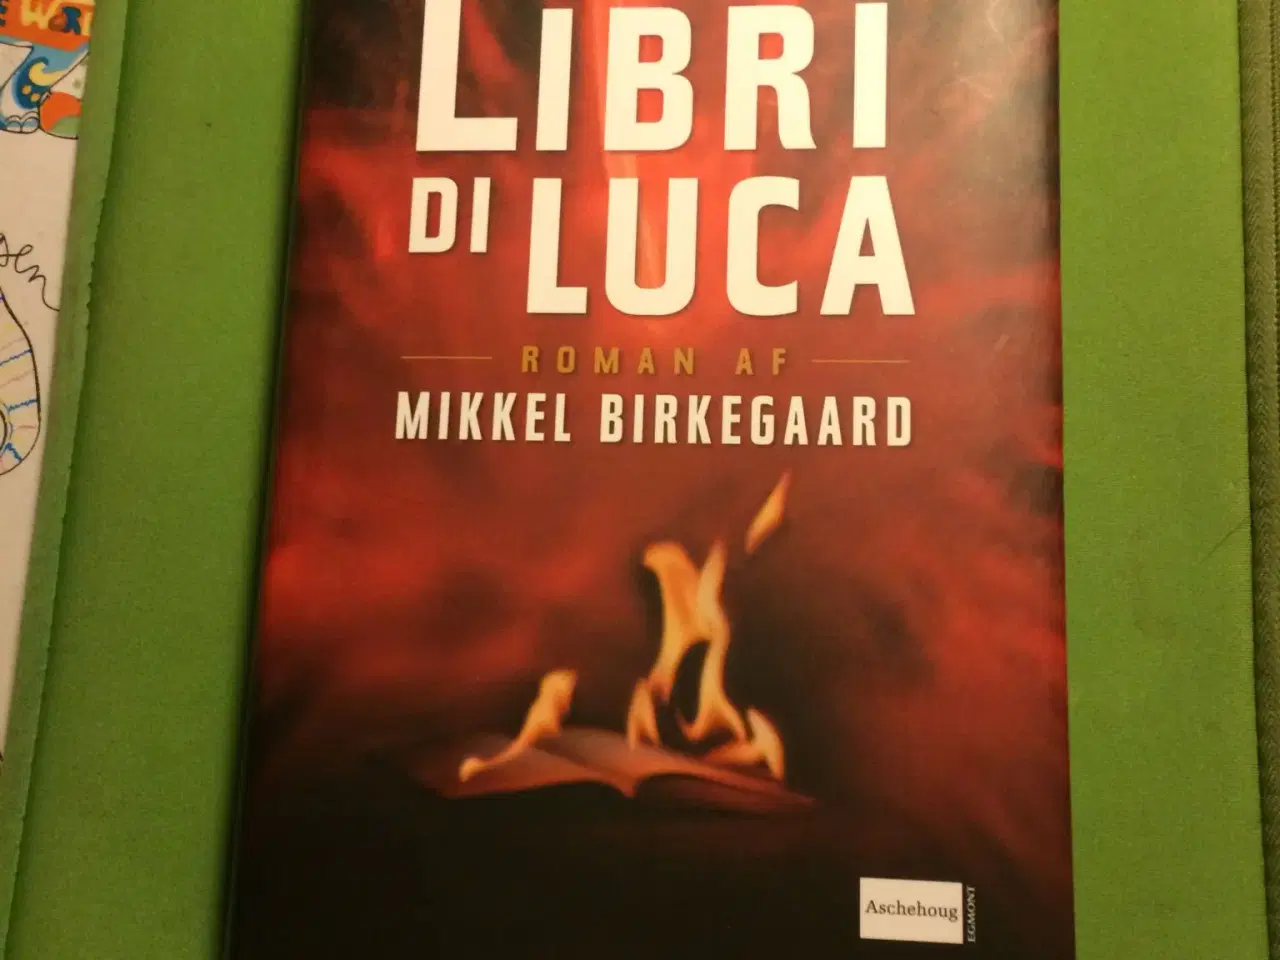 Billede 1 - Libri di Luca. Som ny.